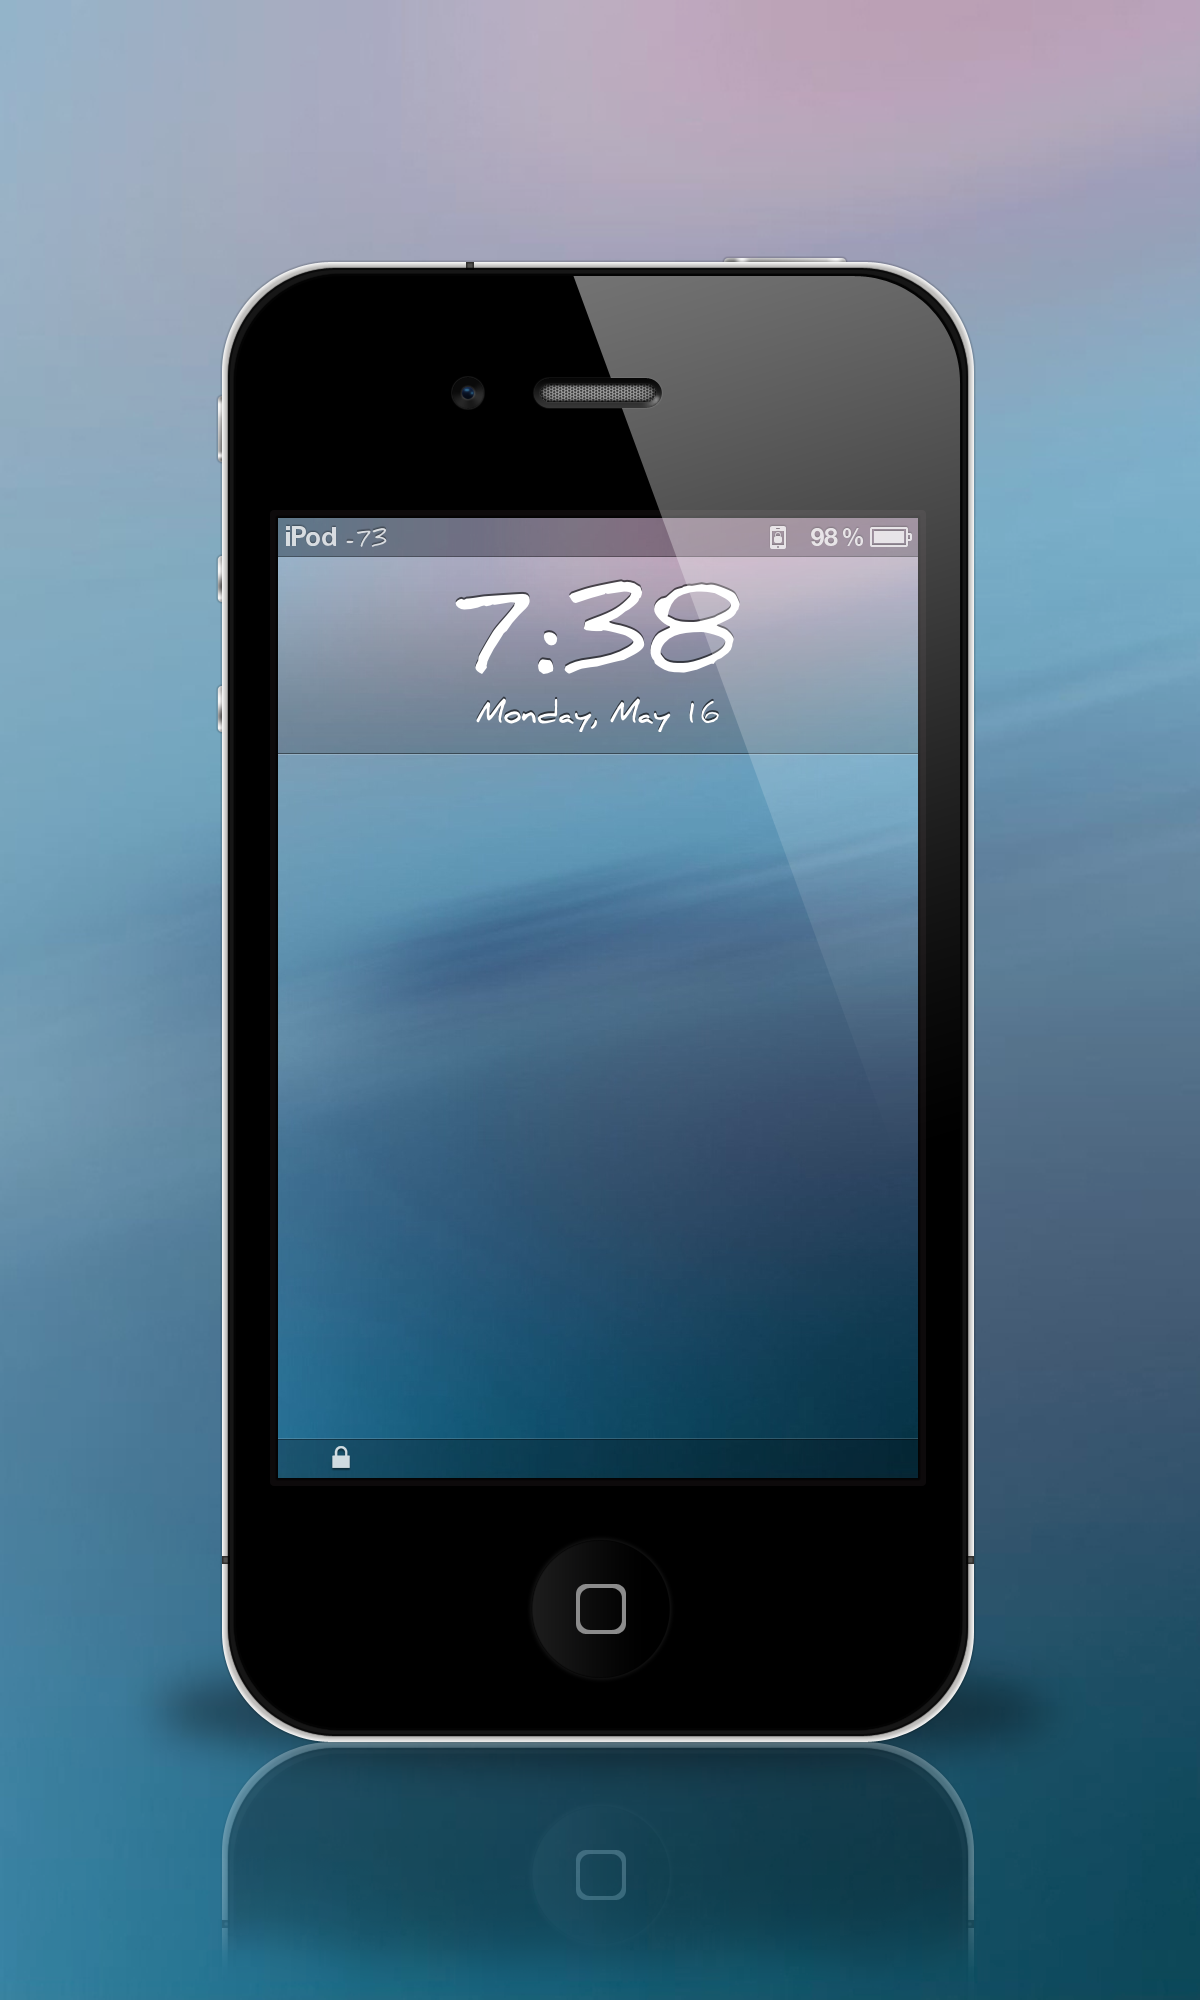 iPhone 4S Lock Screen Wallpaper - WallpaperSafari